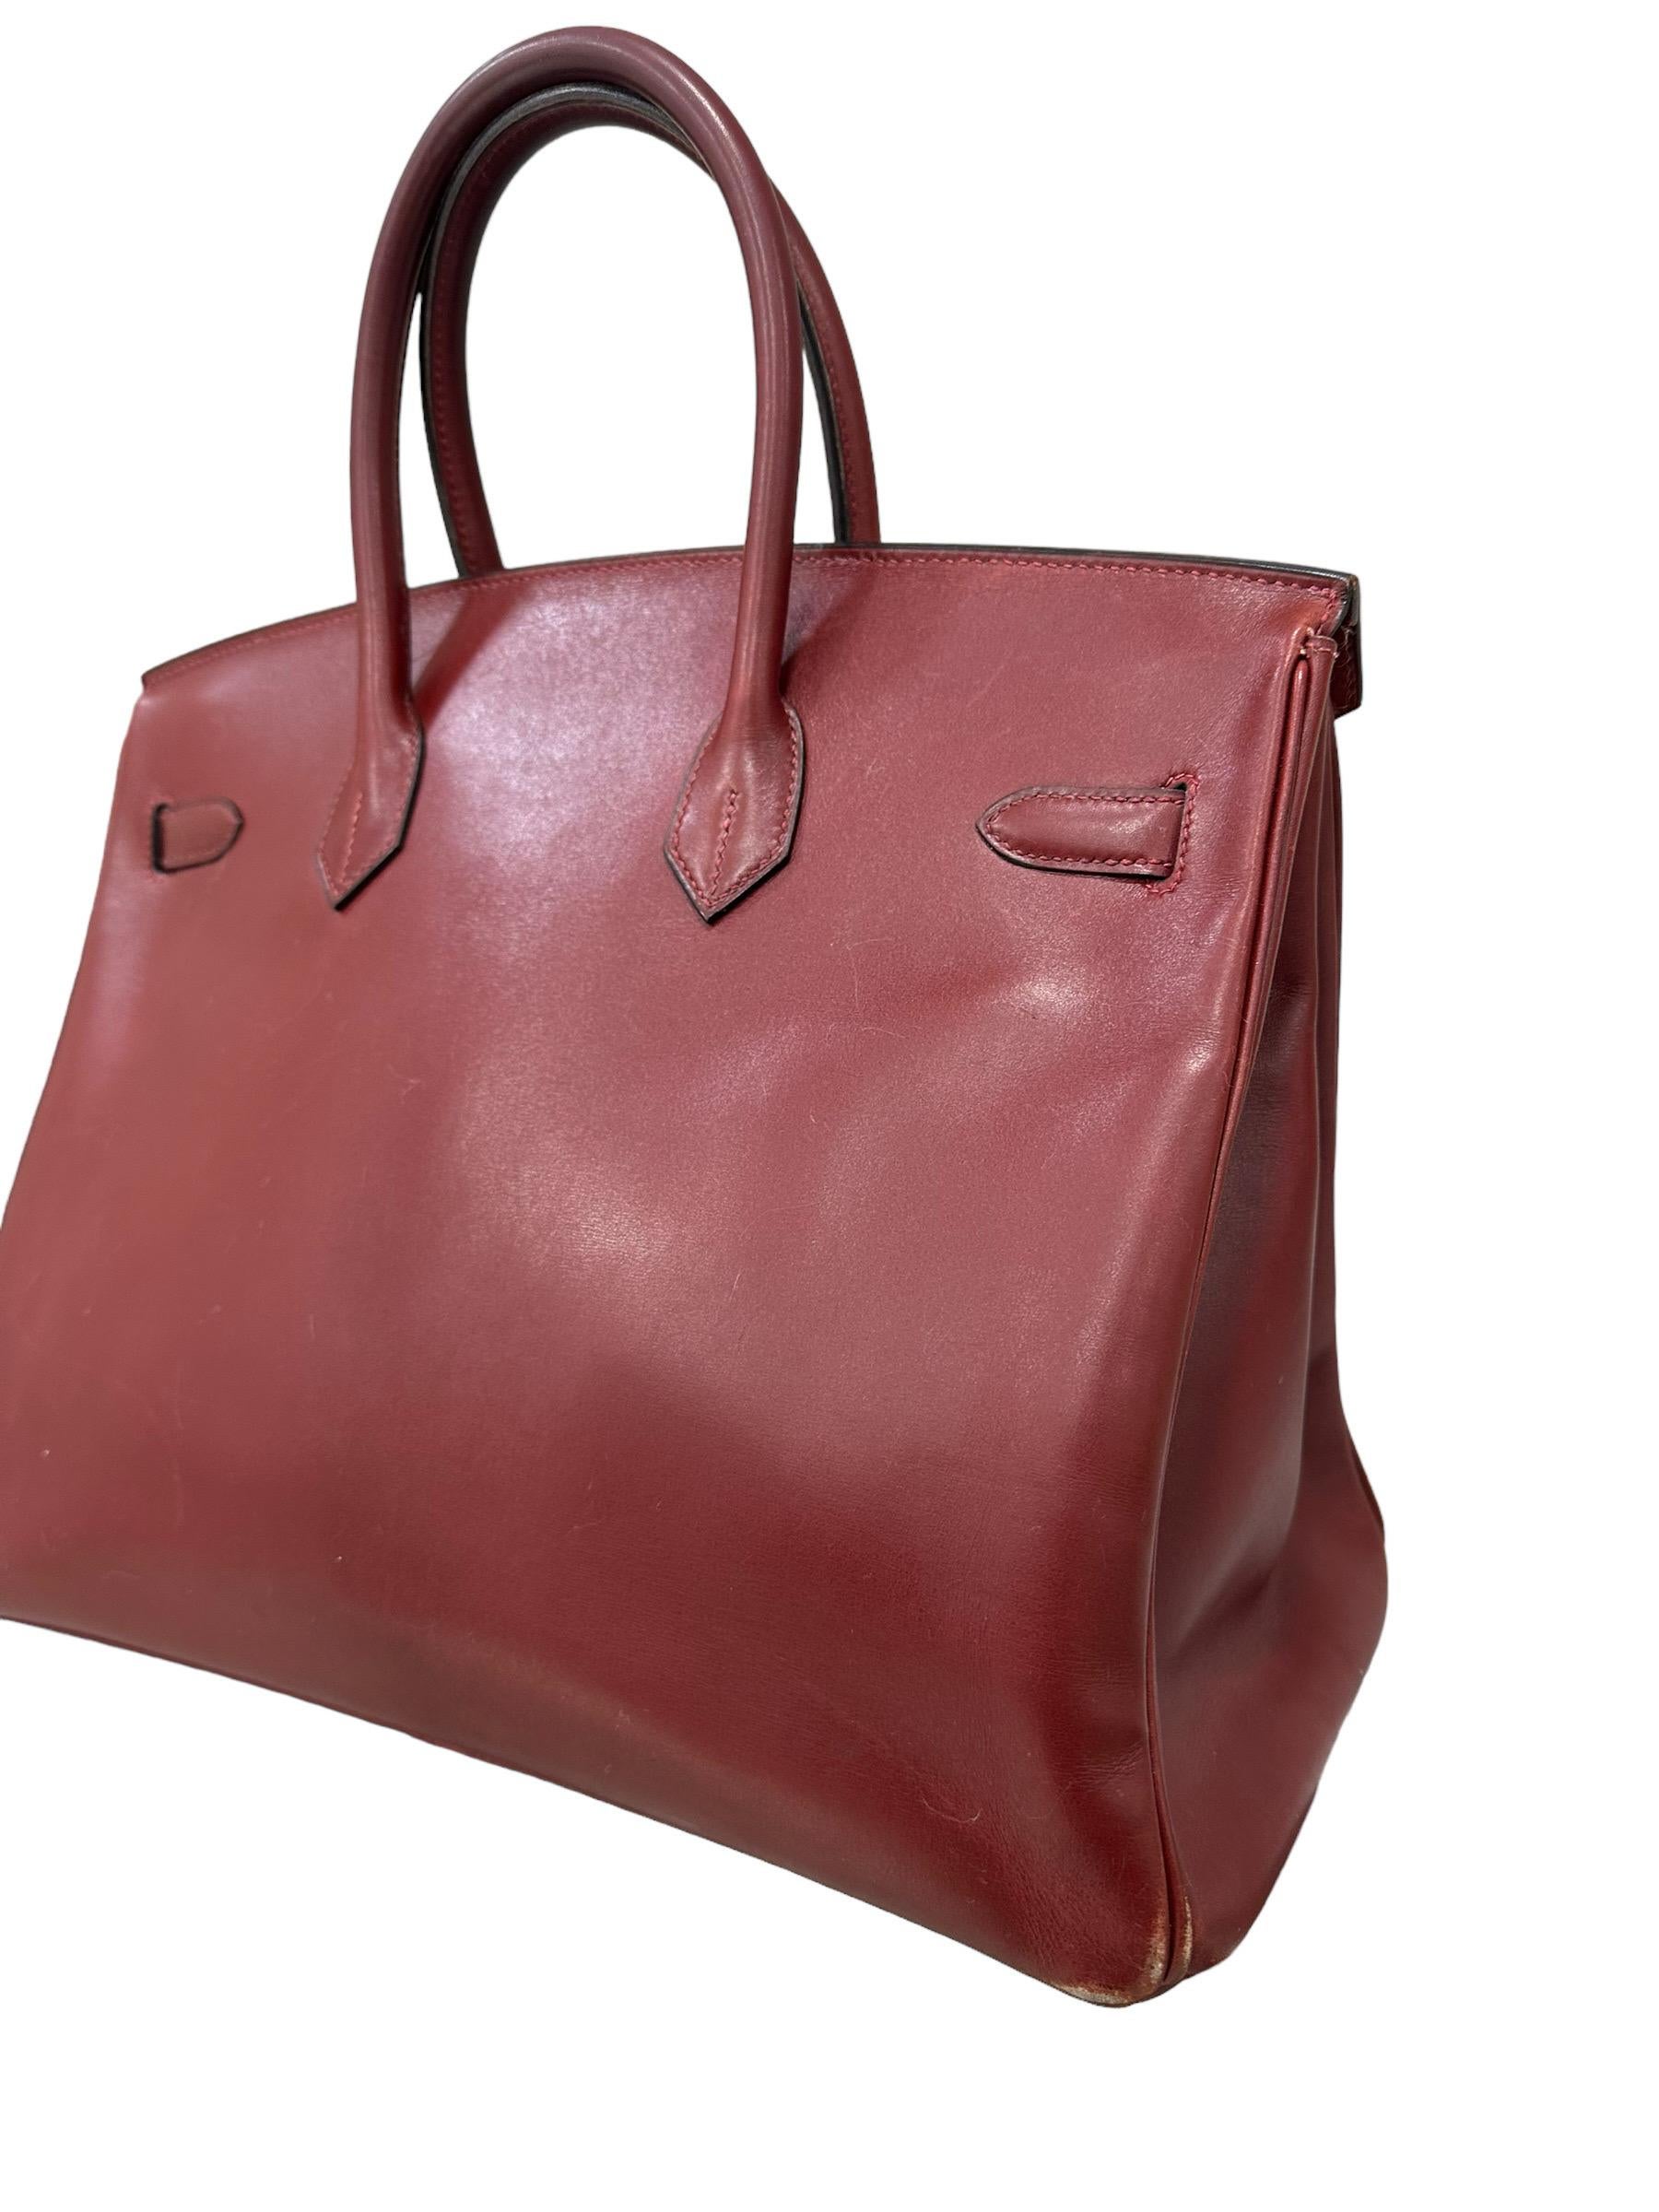 Hermès Birkin 35 Evercalf Rouge Garance Top Handle Bag 2